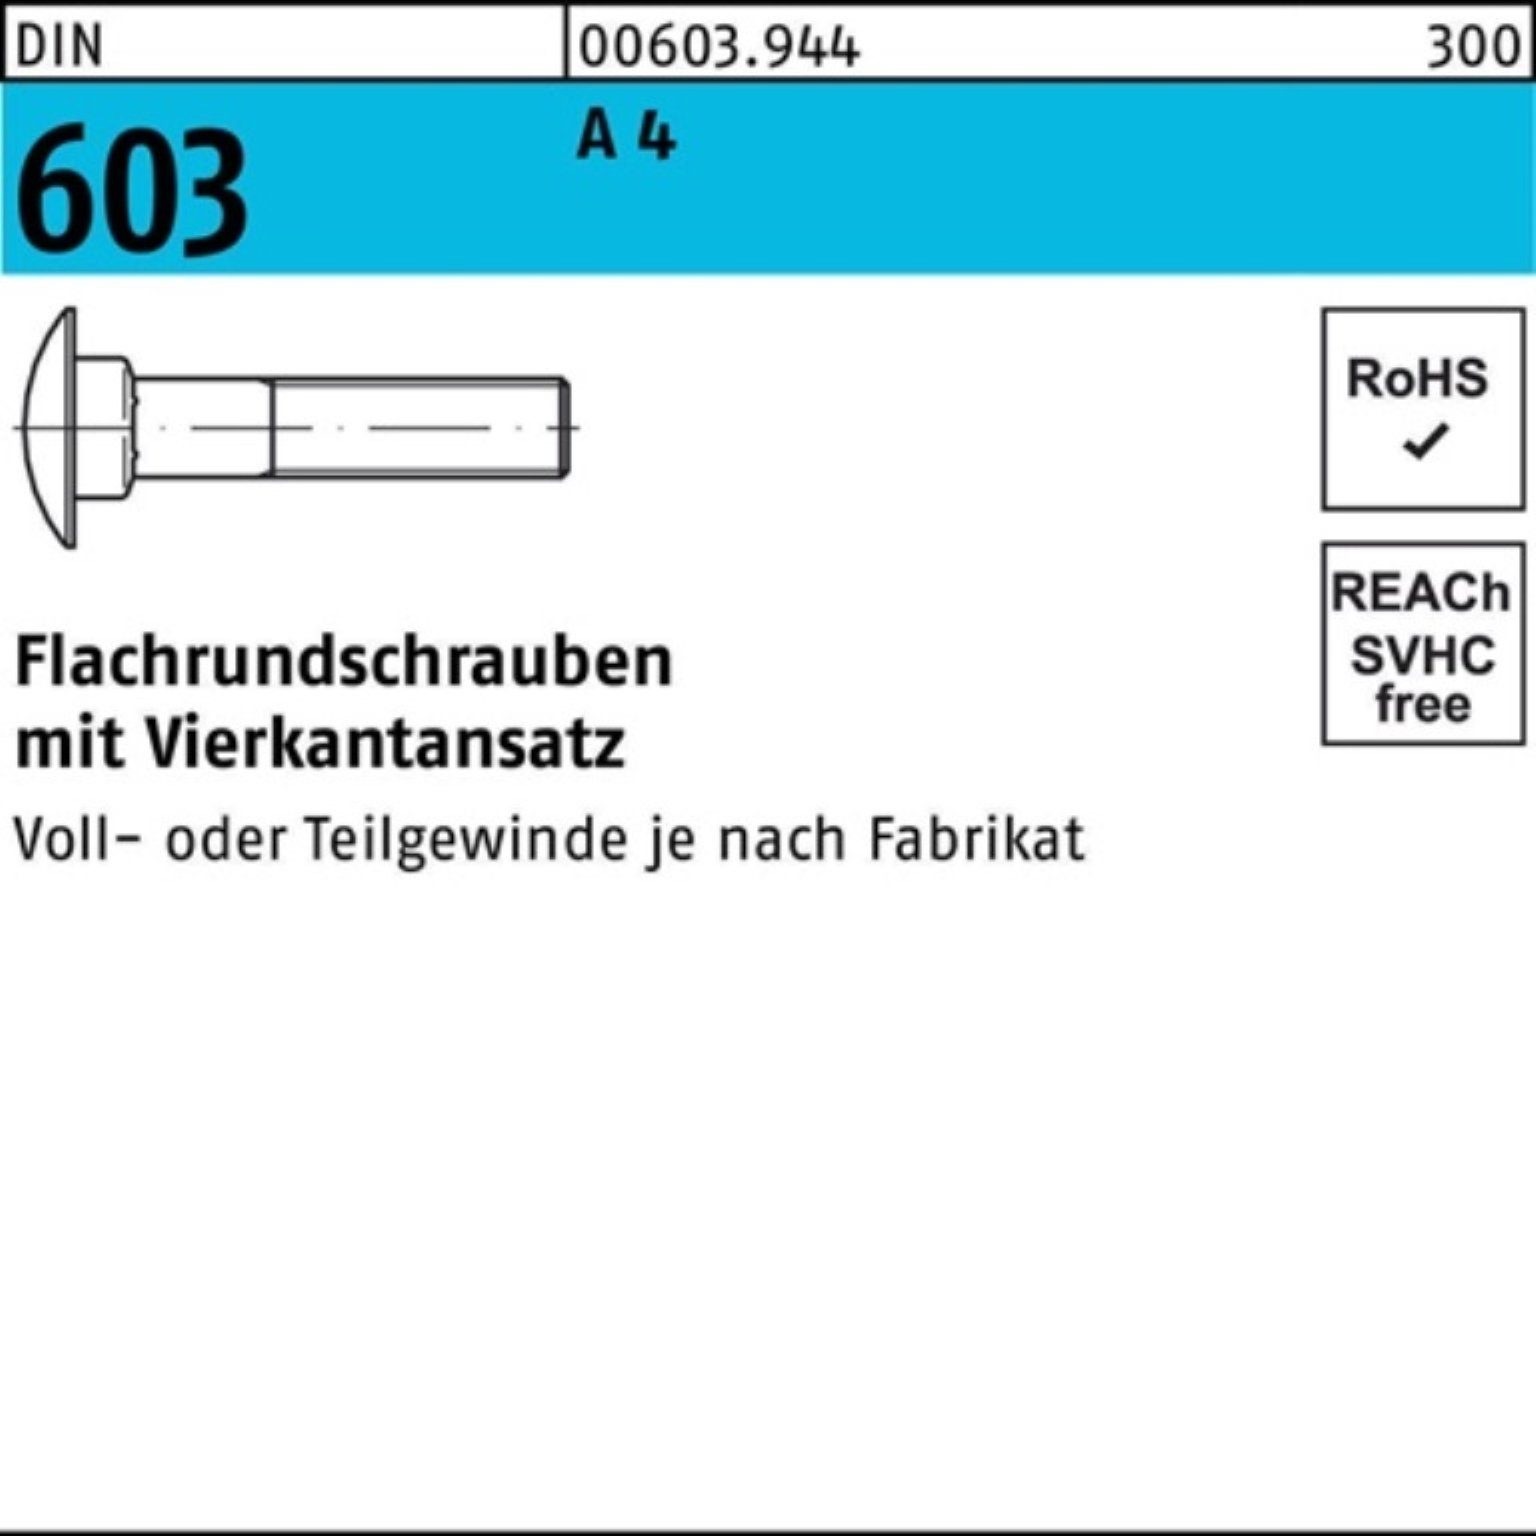 Reyher Schraube 100er Pack Flachrundschraube DIN 603 Vierkantansatz M16x 65 A 4 1 Stü